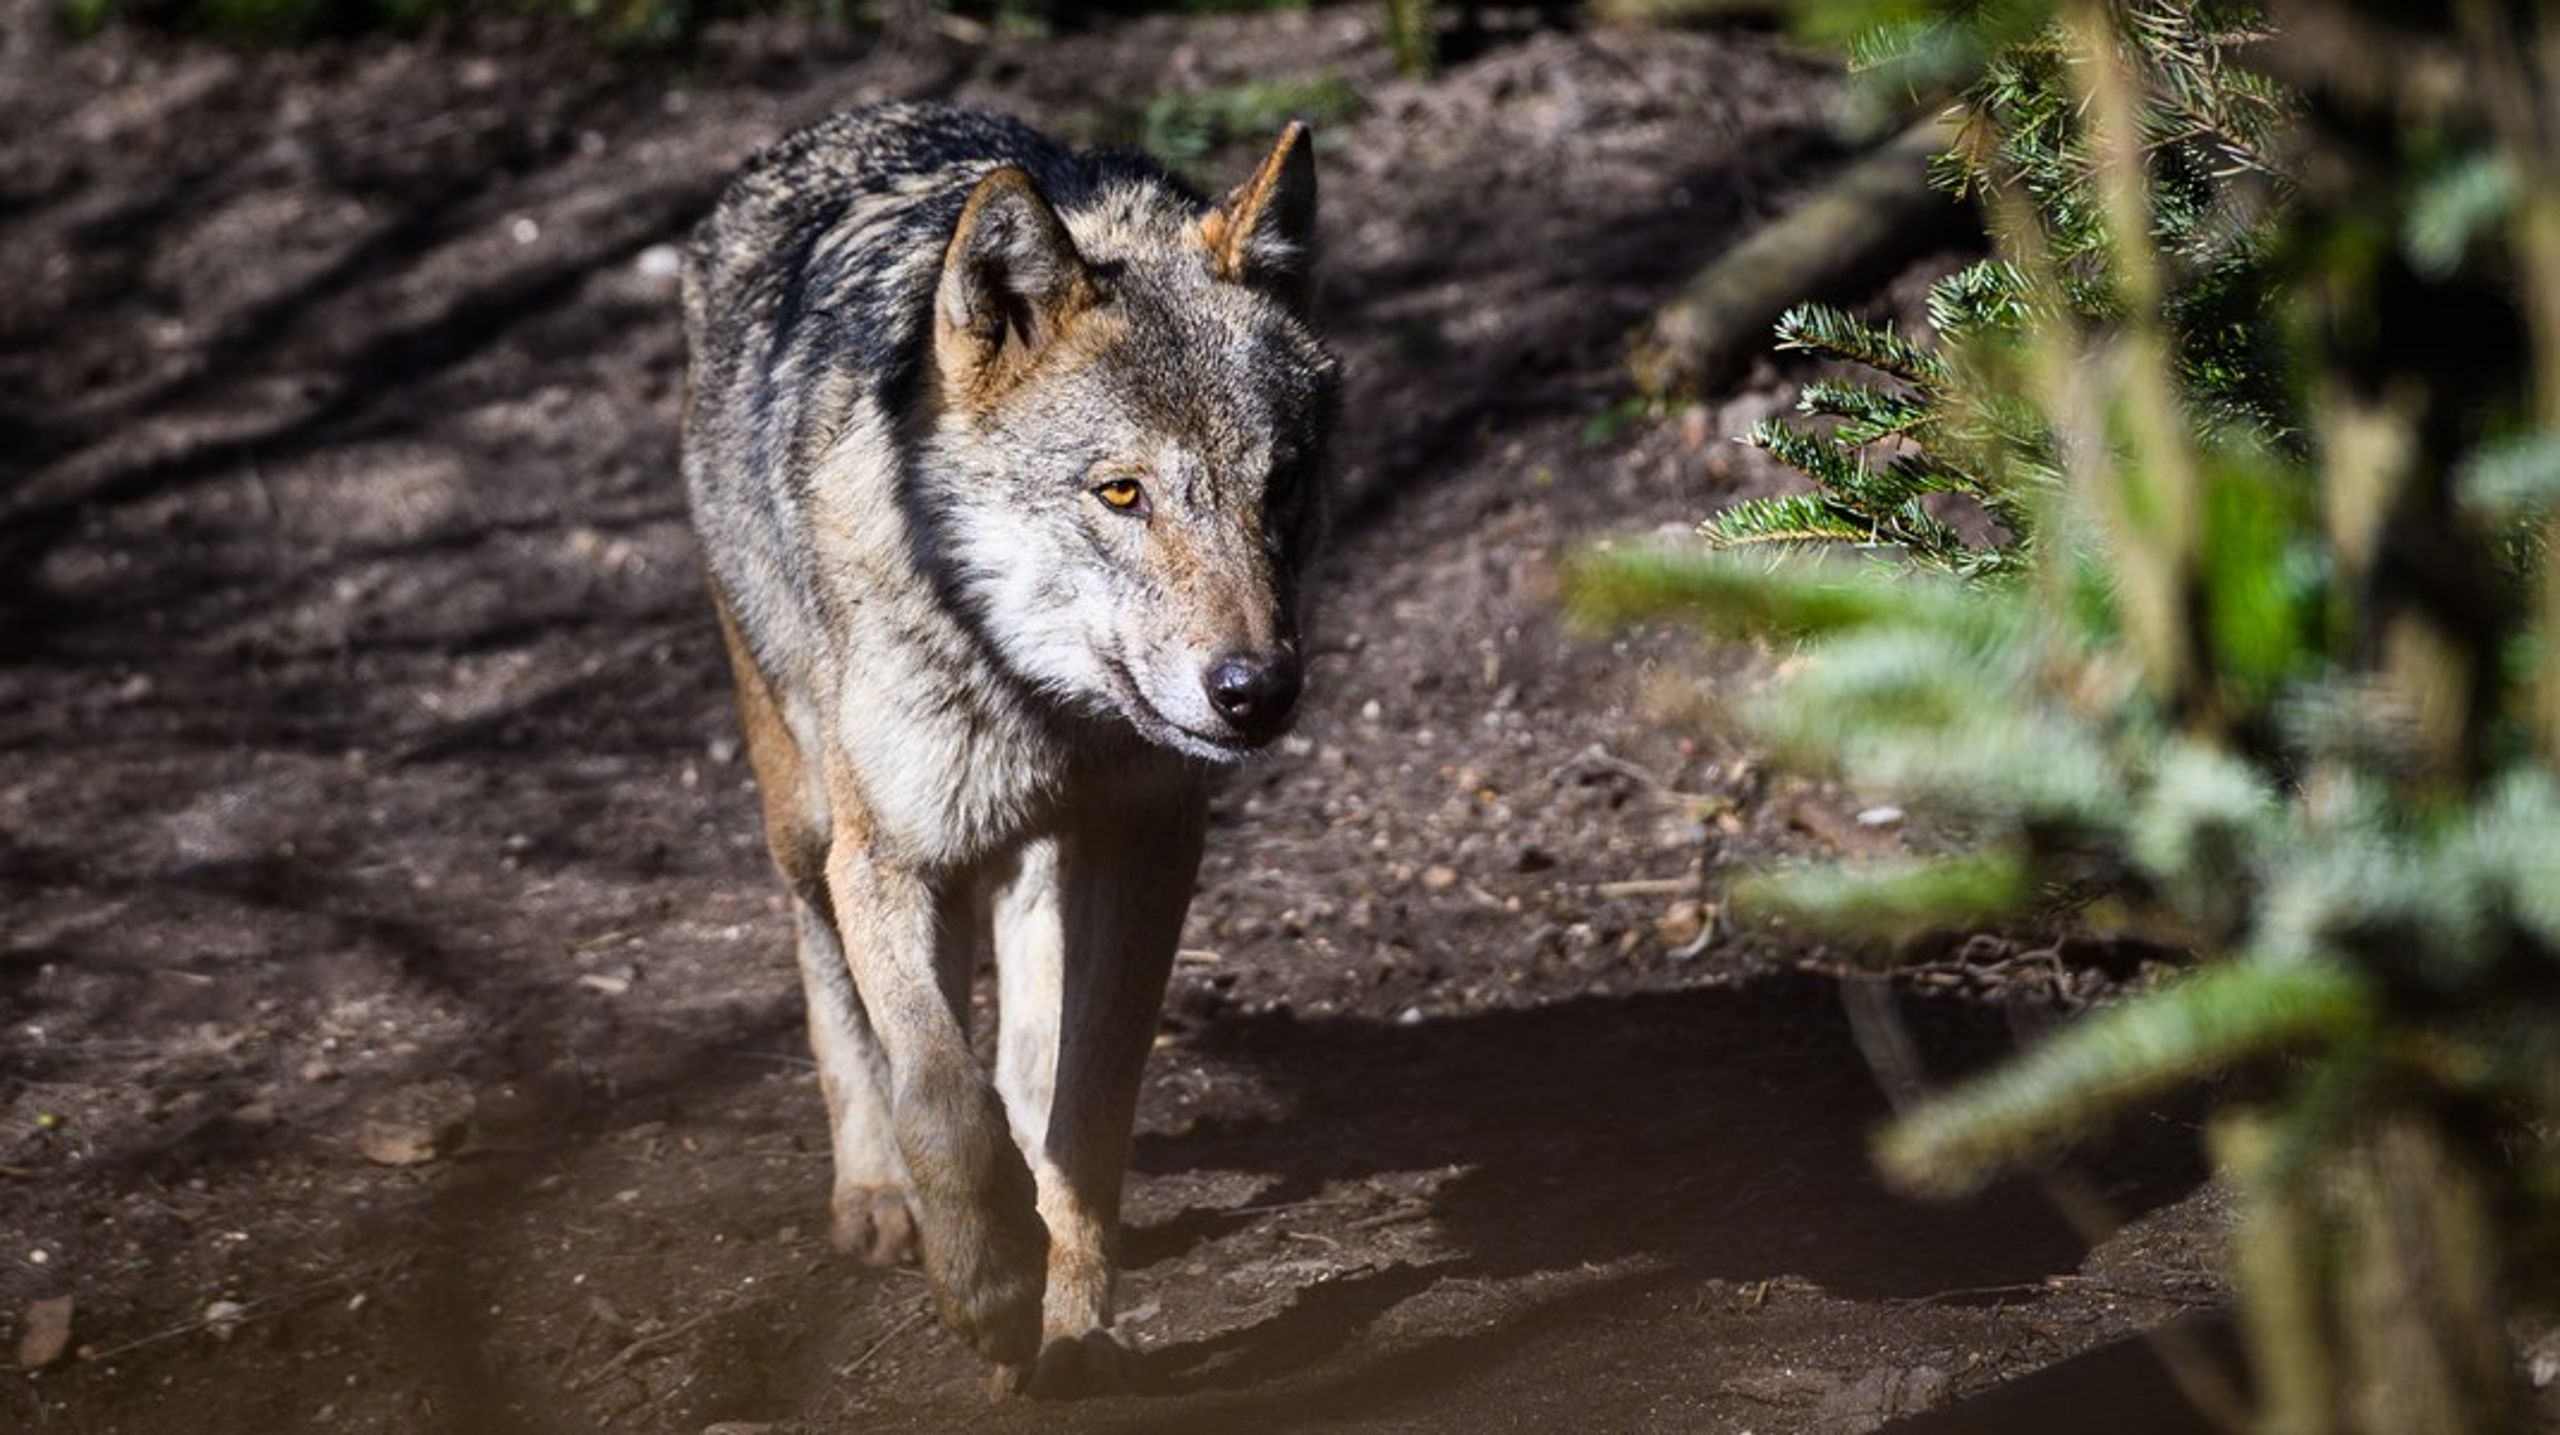 Der er kun ekstremt spinkelt&nbsp;– eller ikke-eksisterende
– belæg for at påstå, at ulven udgør en trussel mod mennesker i de europæiske
lande, skriver Alexander Holm.